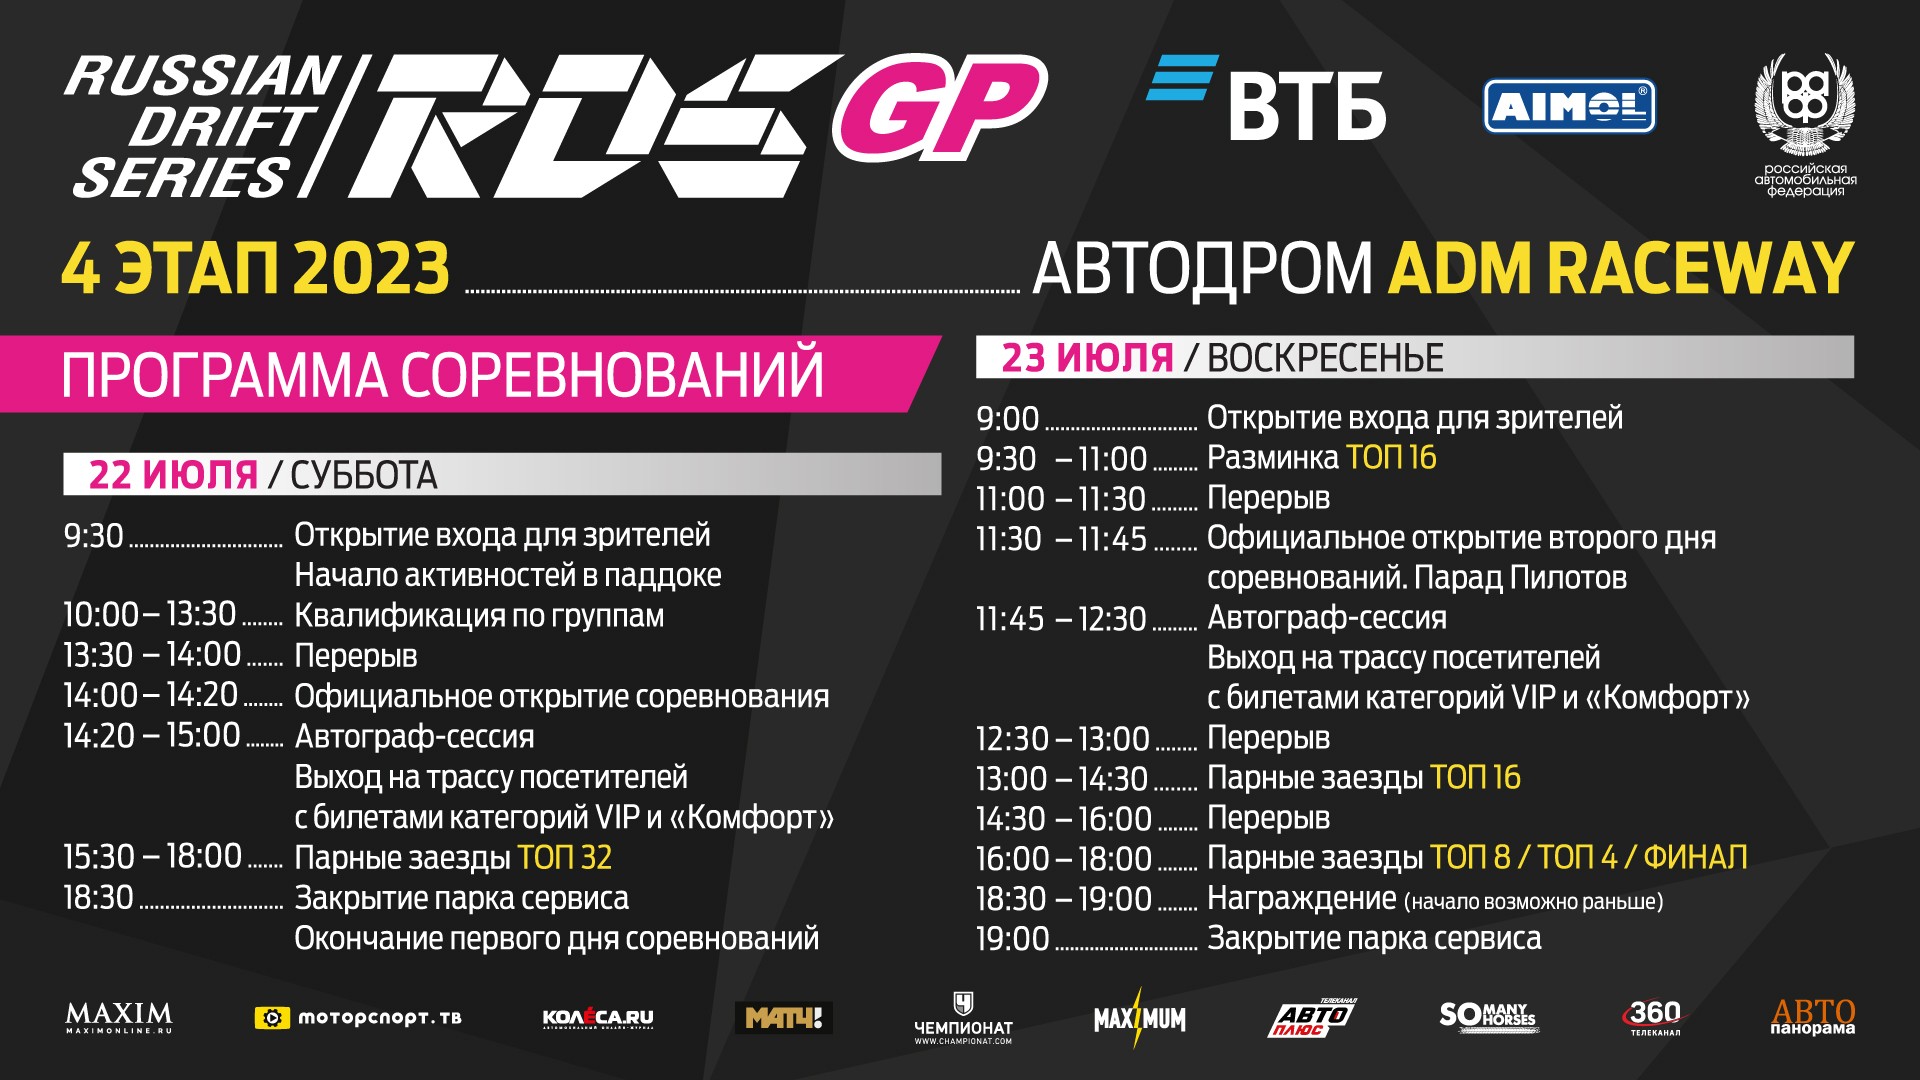 Дрифт снова в Москве: четвёртый этап RDS GP на автодроме ADM Raceway 22-23 июля